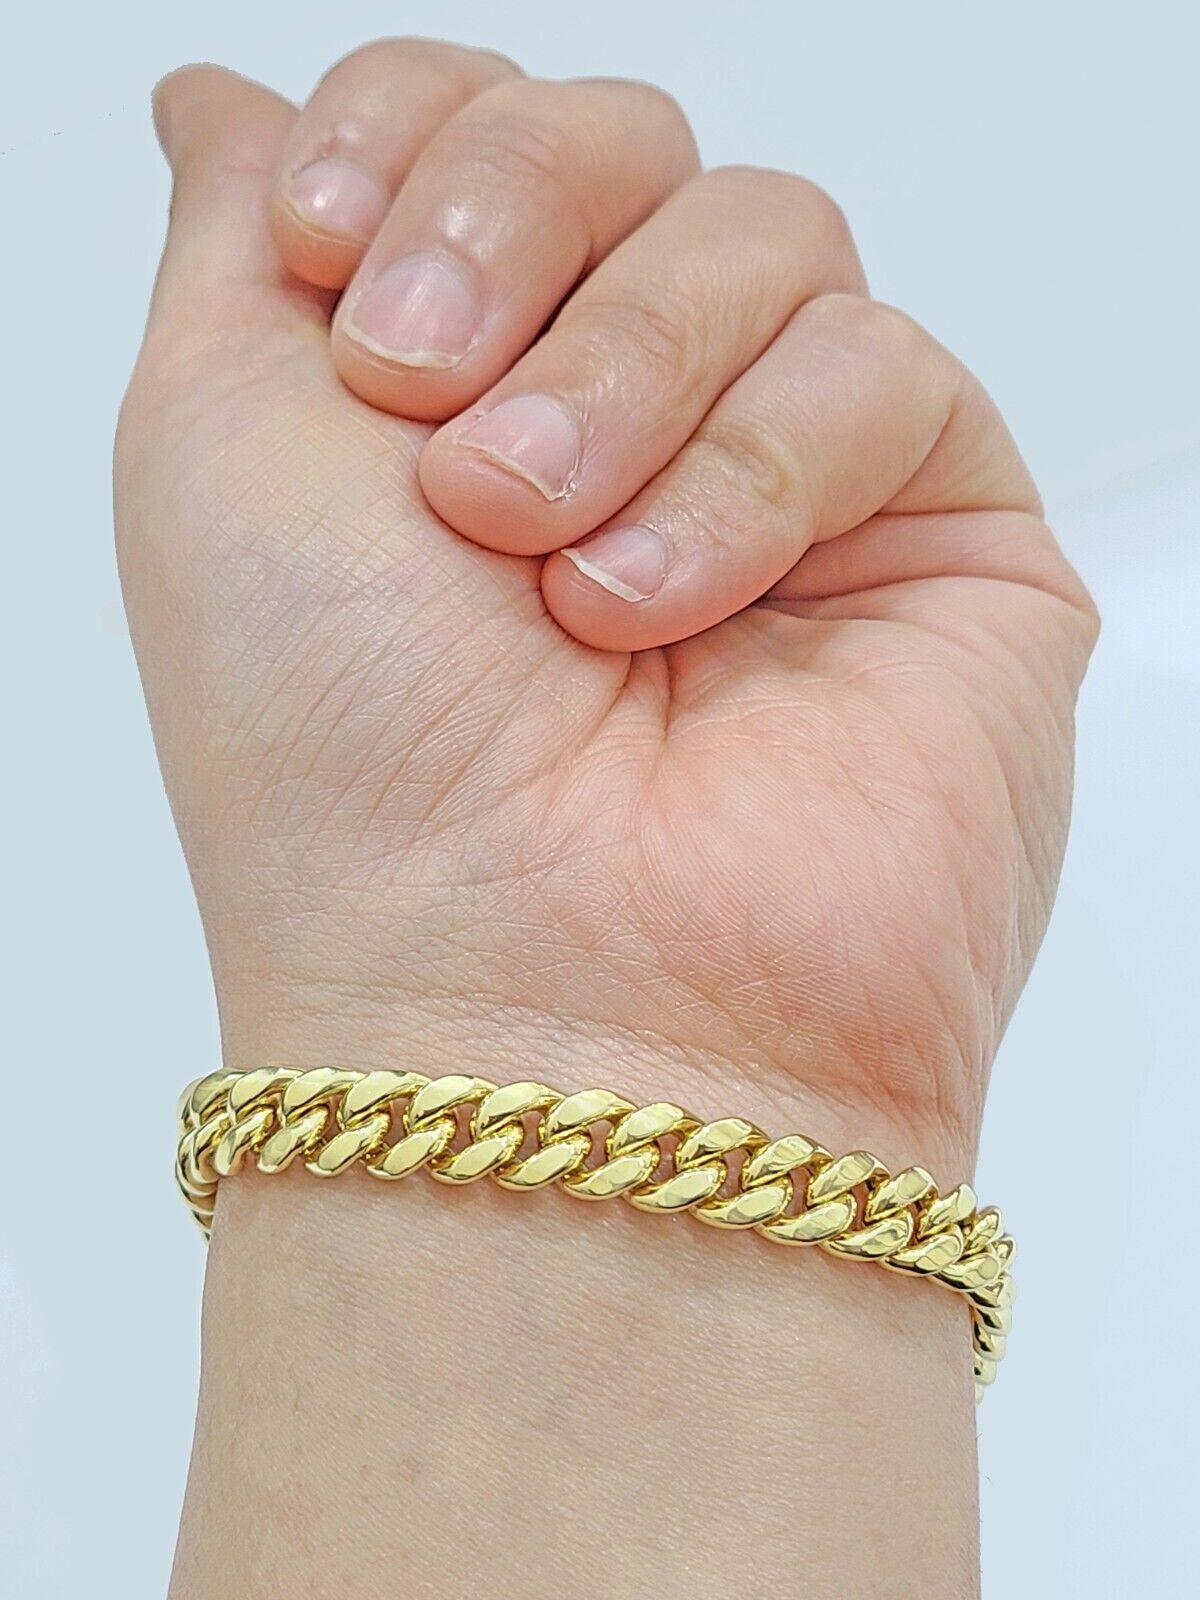 Buy GOGEMS Gold Bracelet for Women | Diamond Bangle Bracelets for Girls | 8  Gram 18 KT Yellow Gold | ADBR028 at Amazon.in